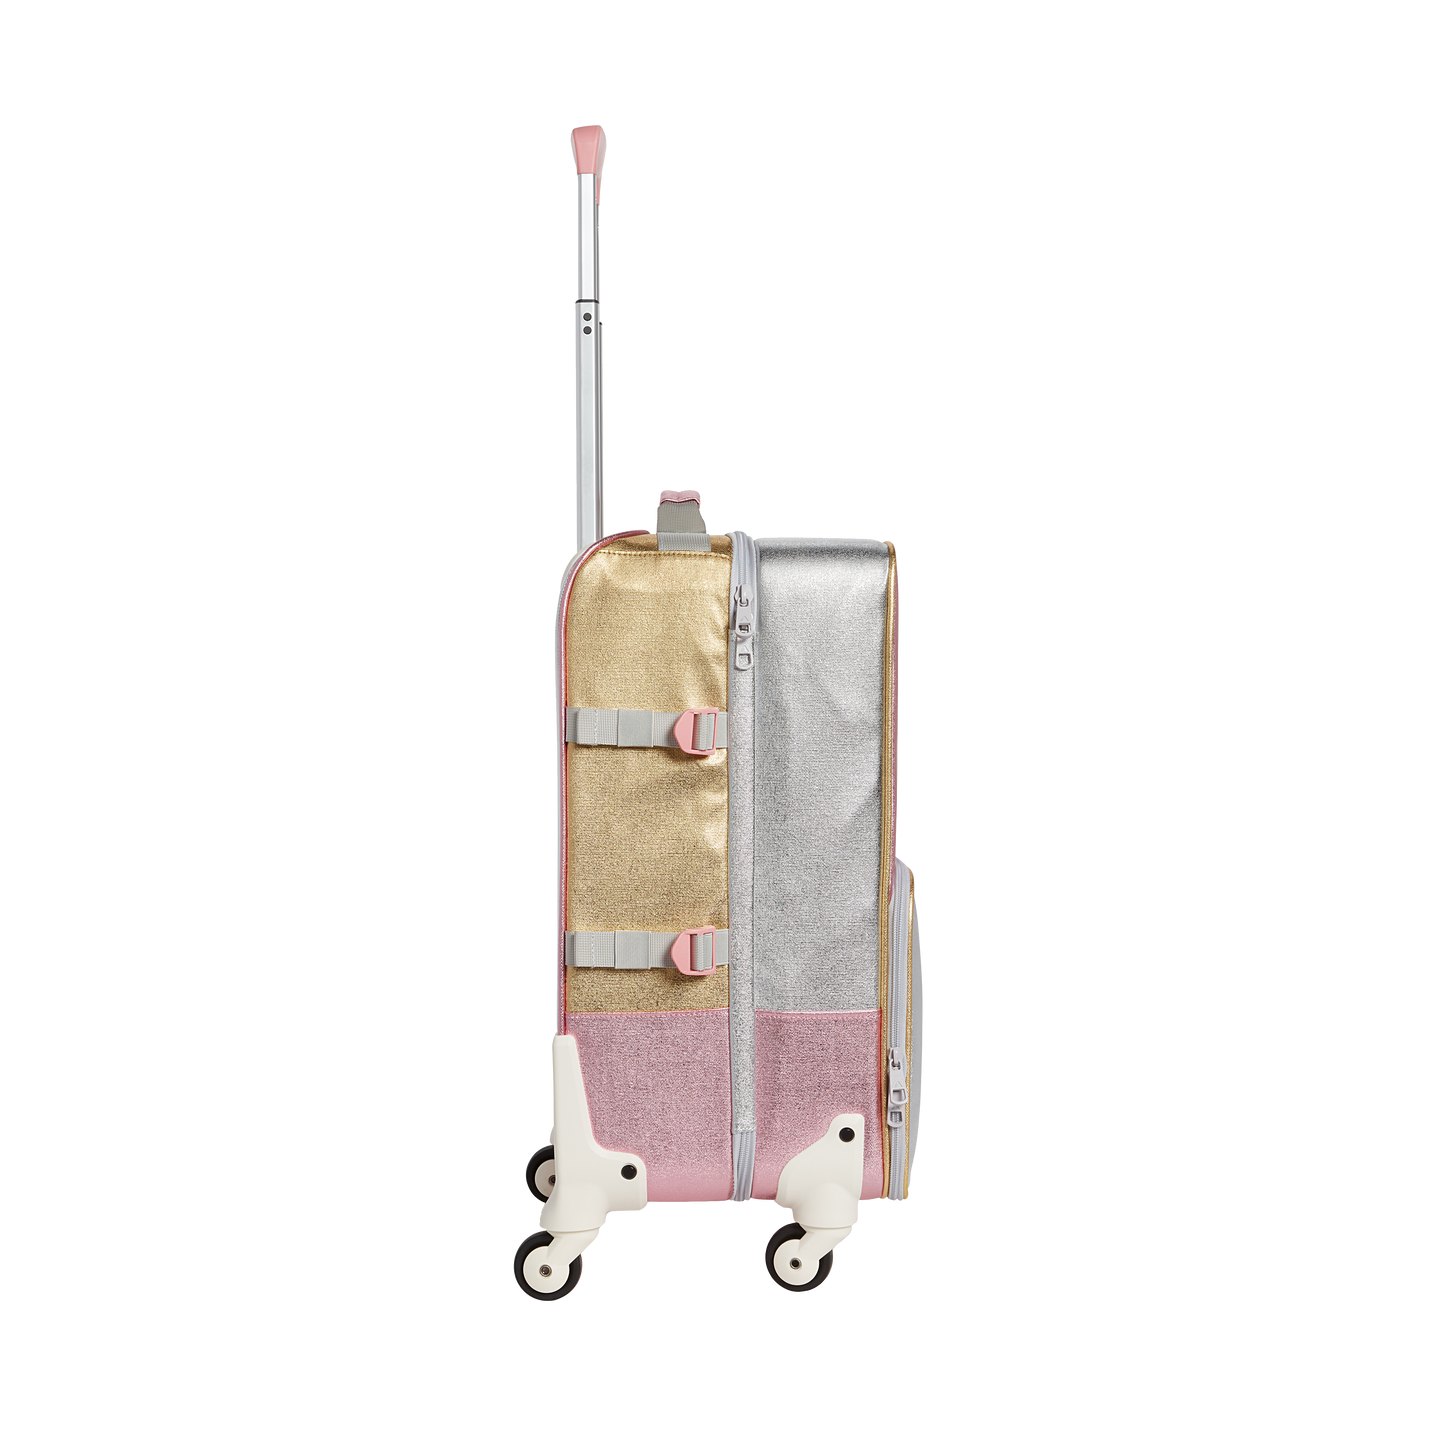 Logan Suitcase - Pink/Silver